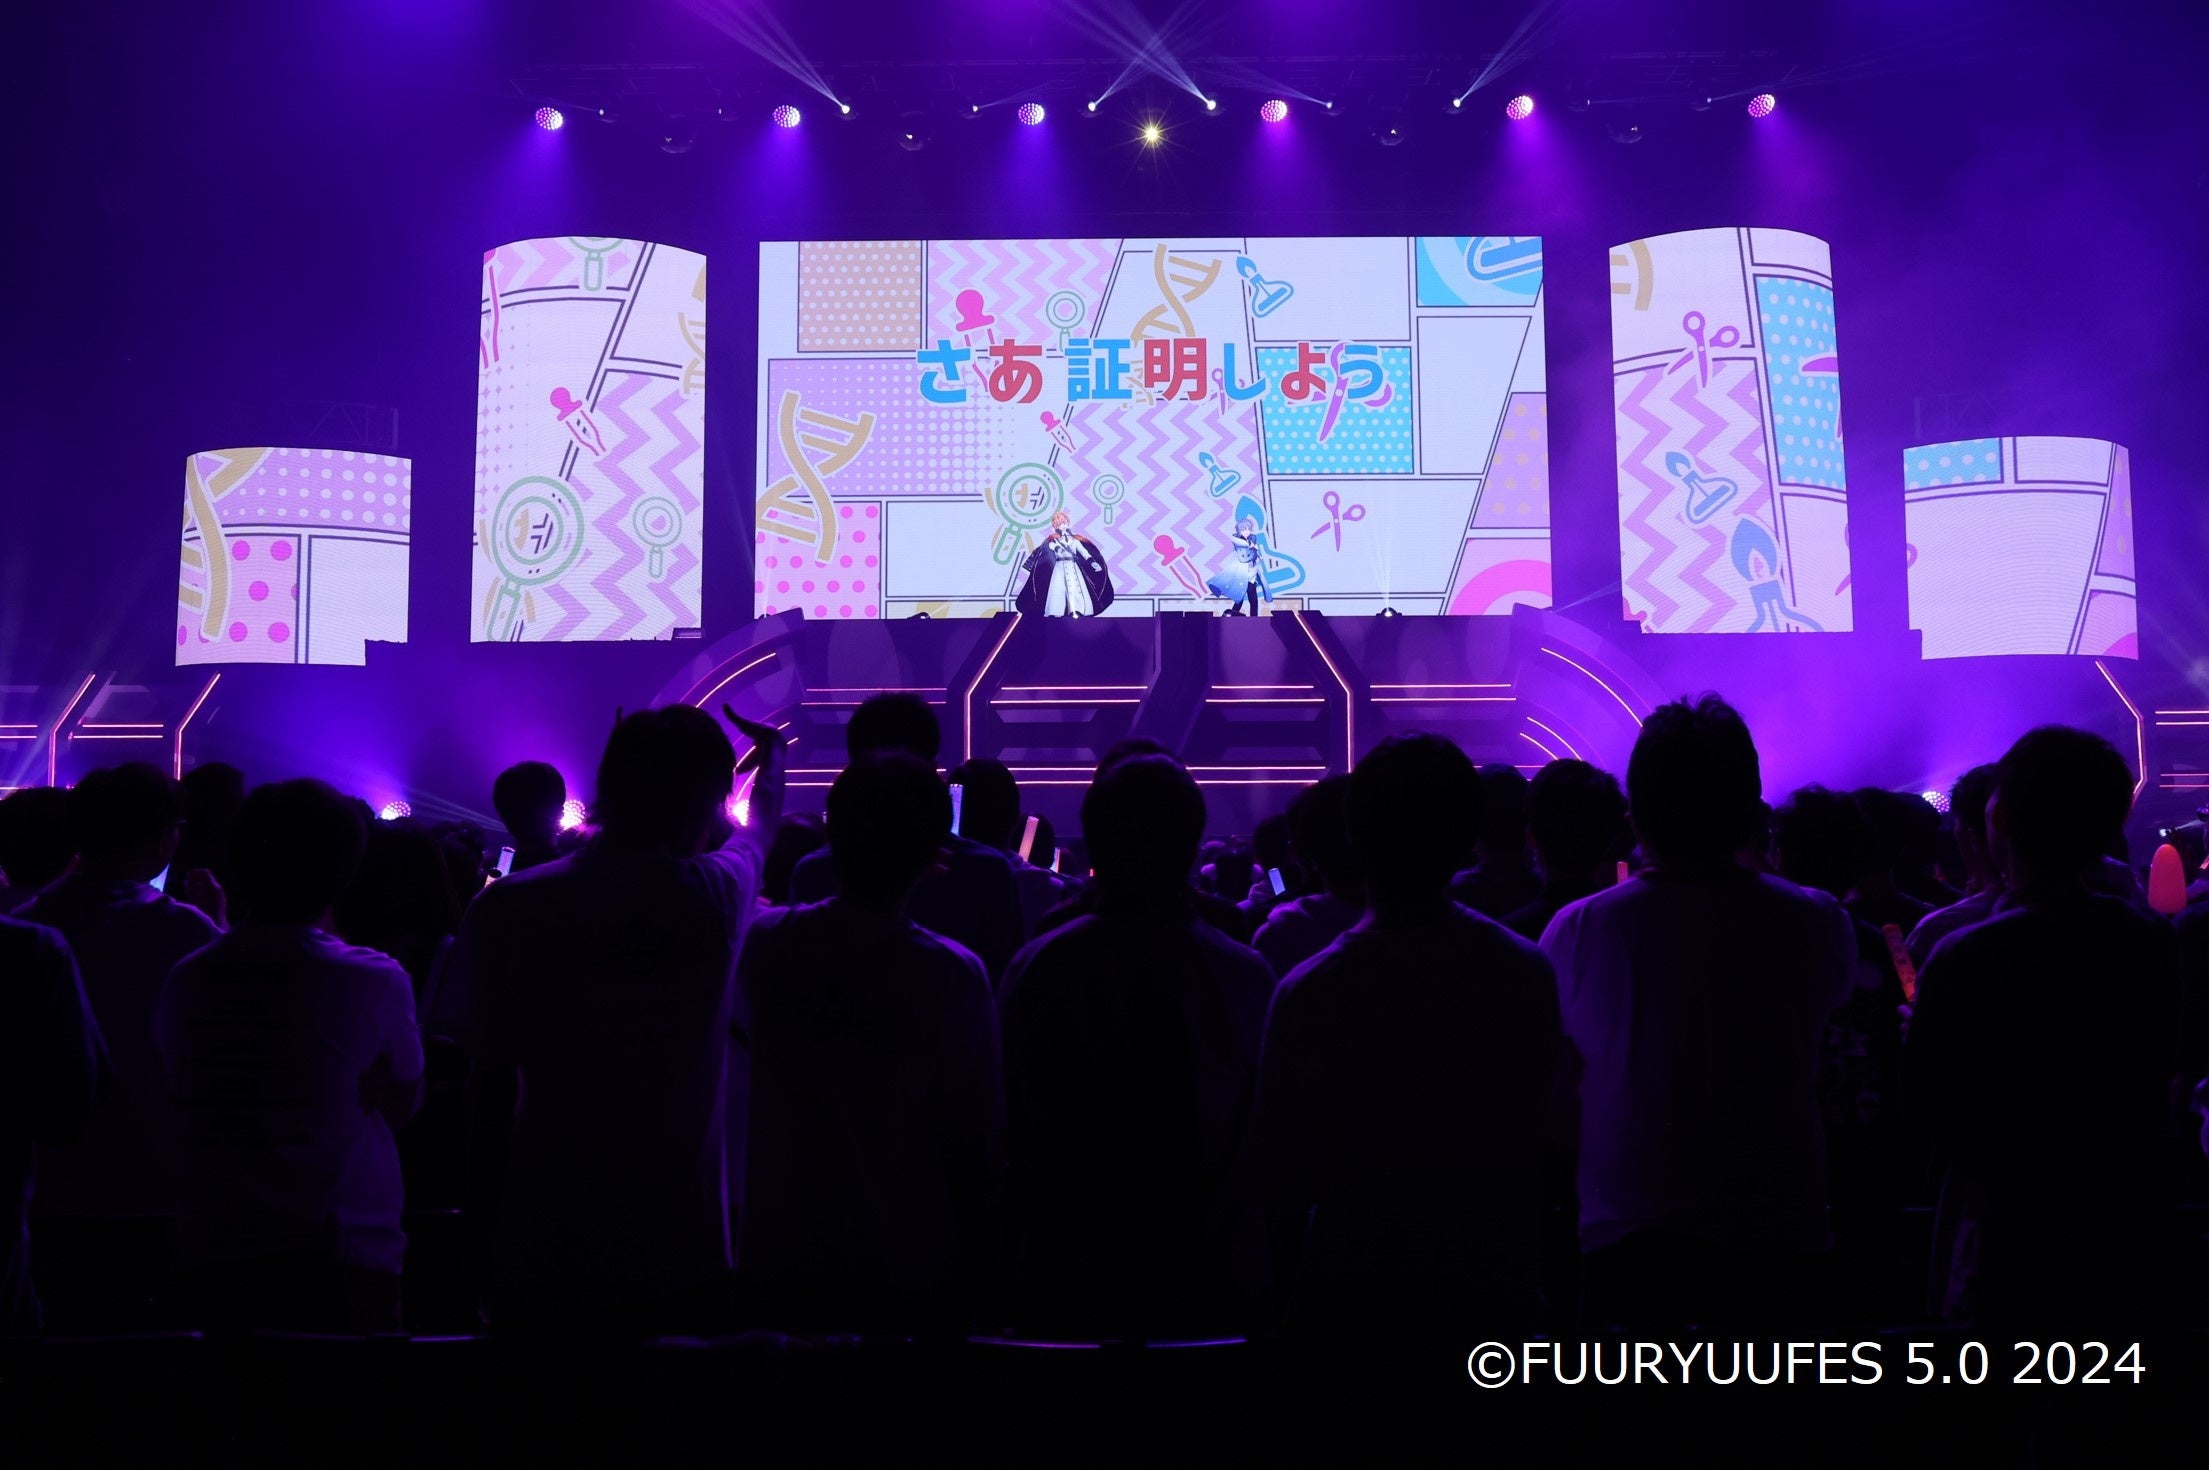 《イベントレポート》リアルとバーチャルが融合する次世代型アイドルイベント「FUURYUUFES 5.0 2024」を開催...